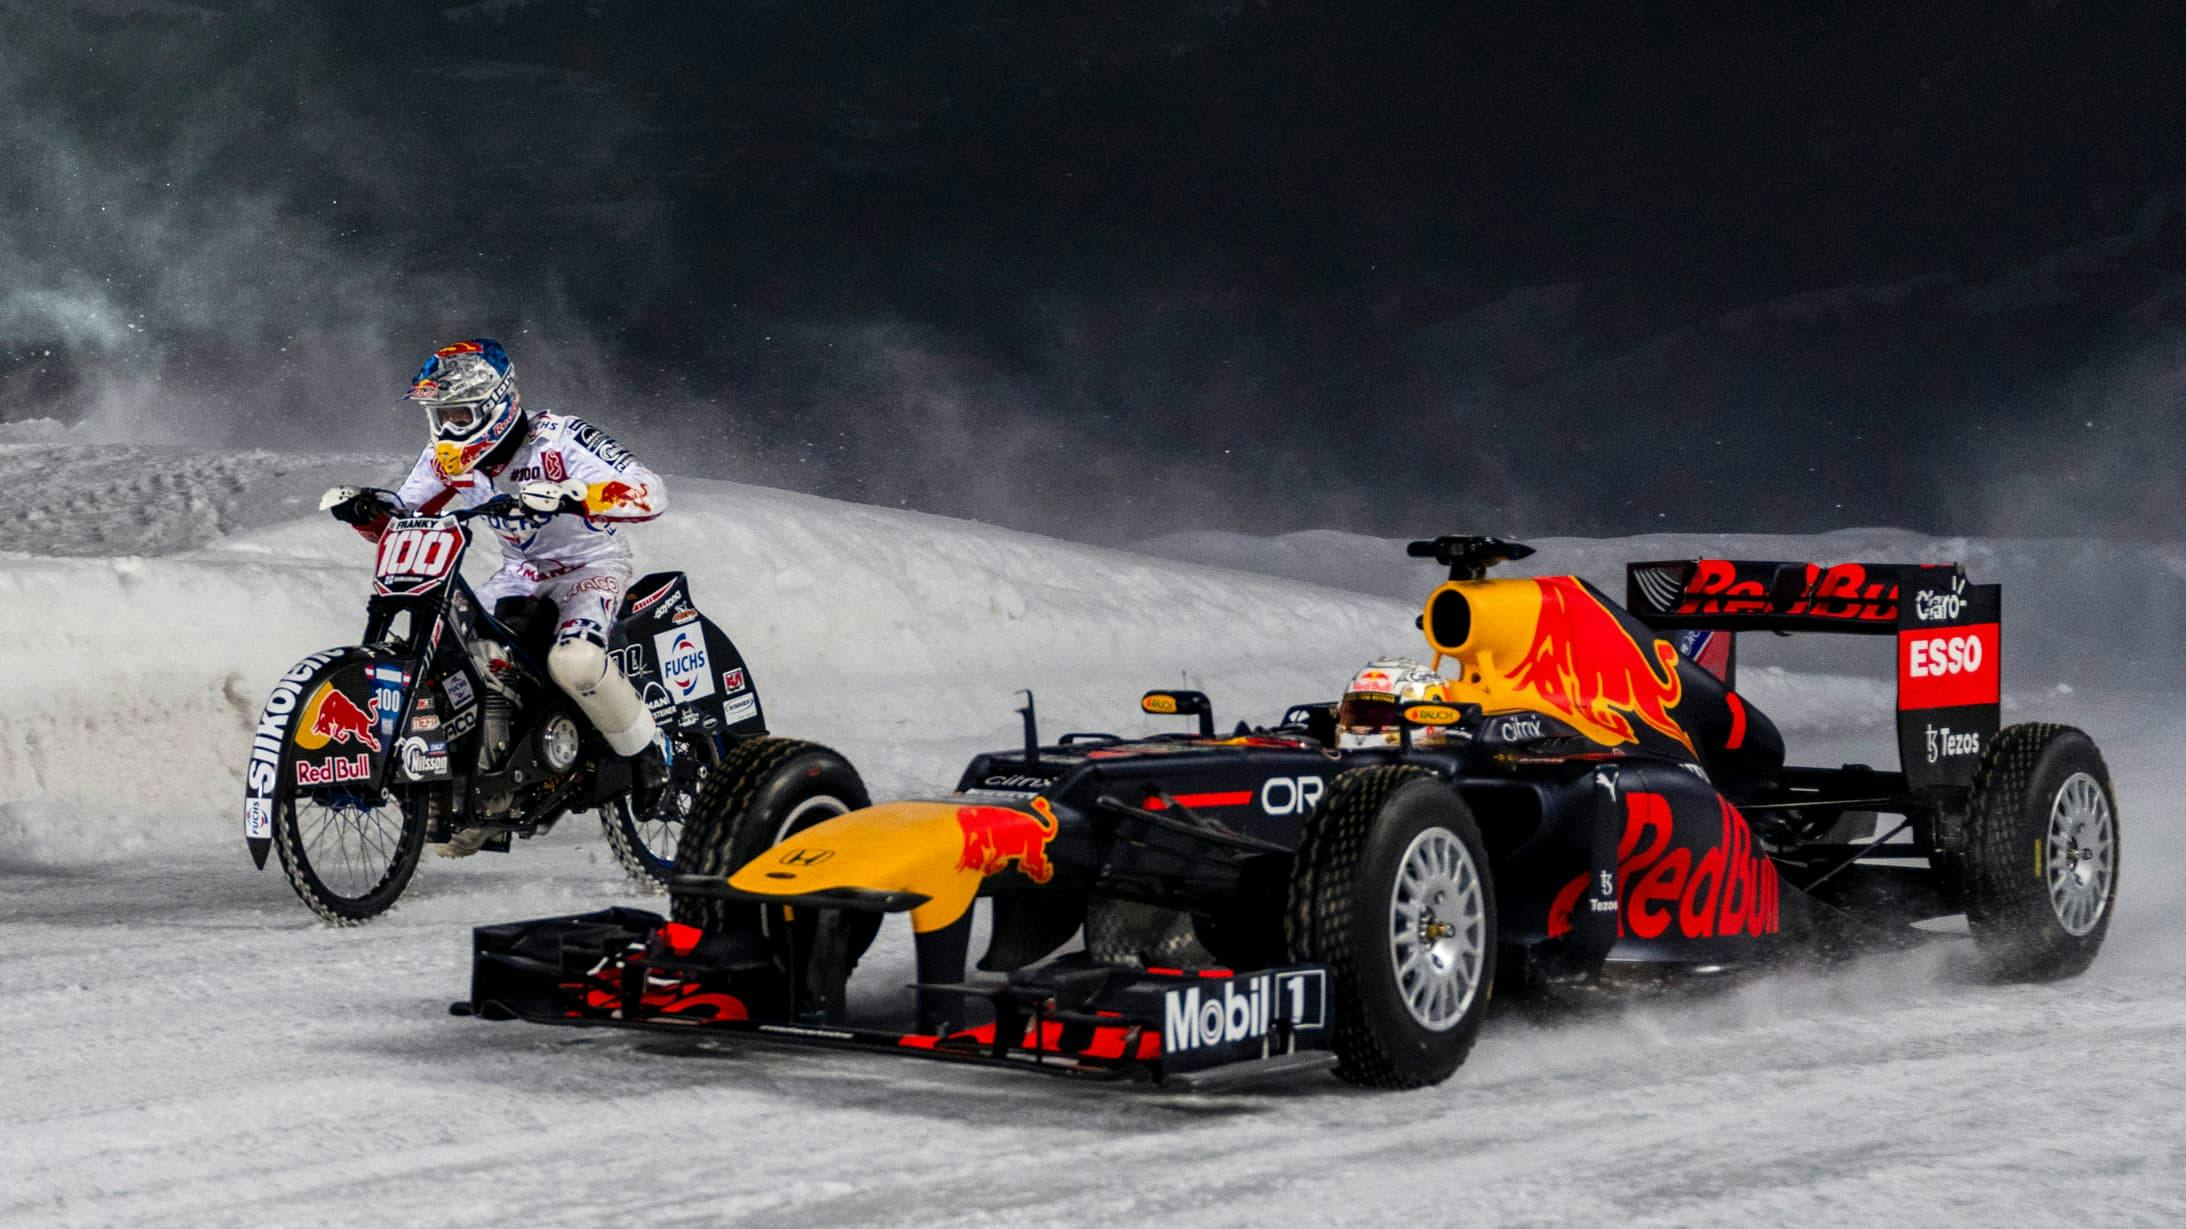 Red Bull RB8 - Campionato F1 2012 - sul ghiaccio